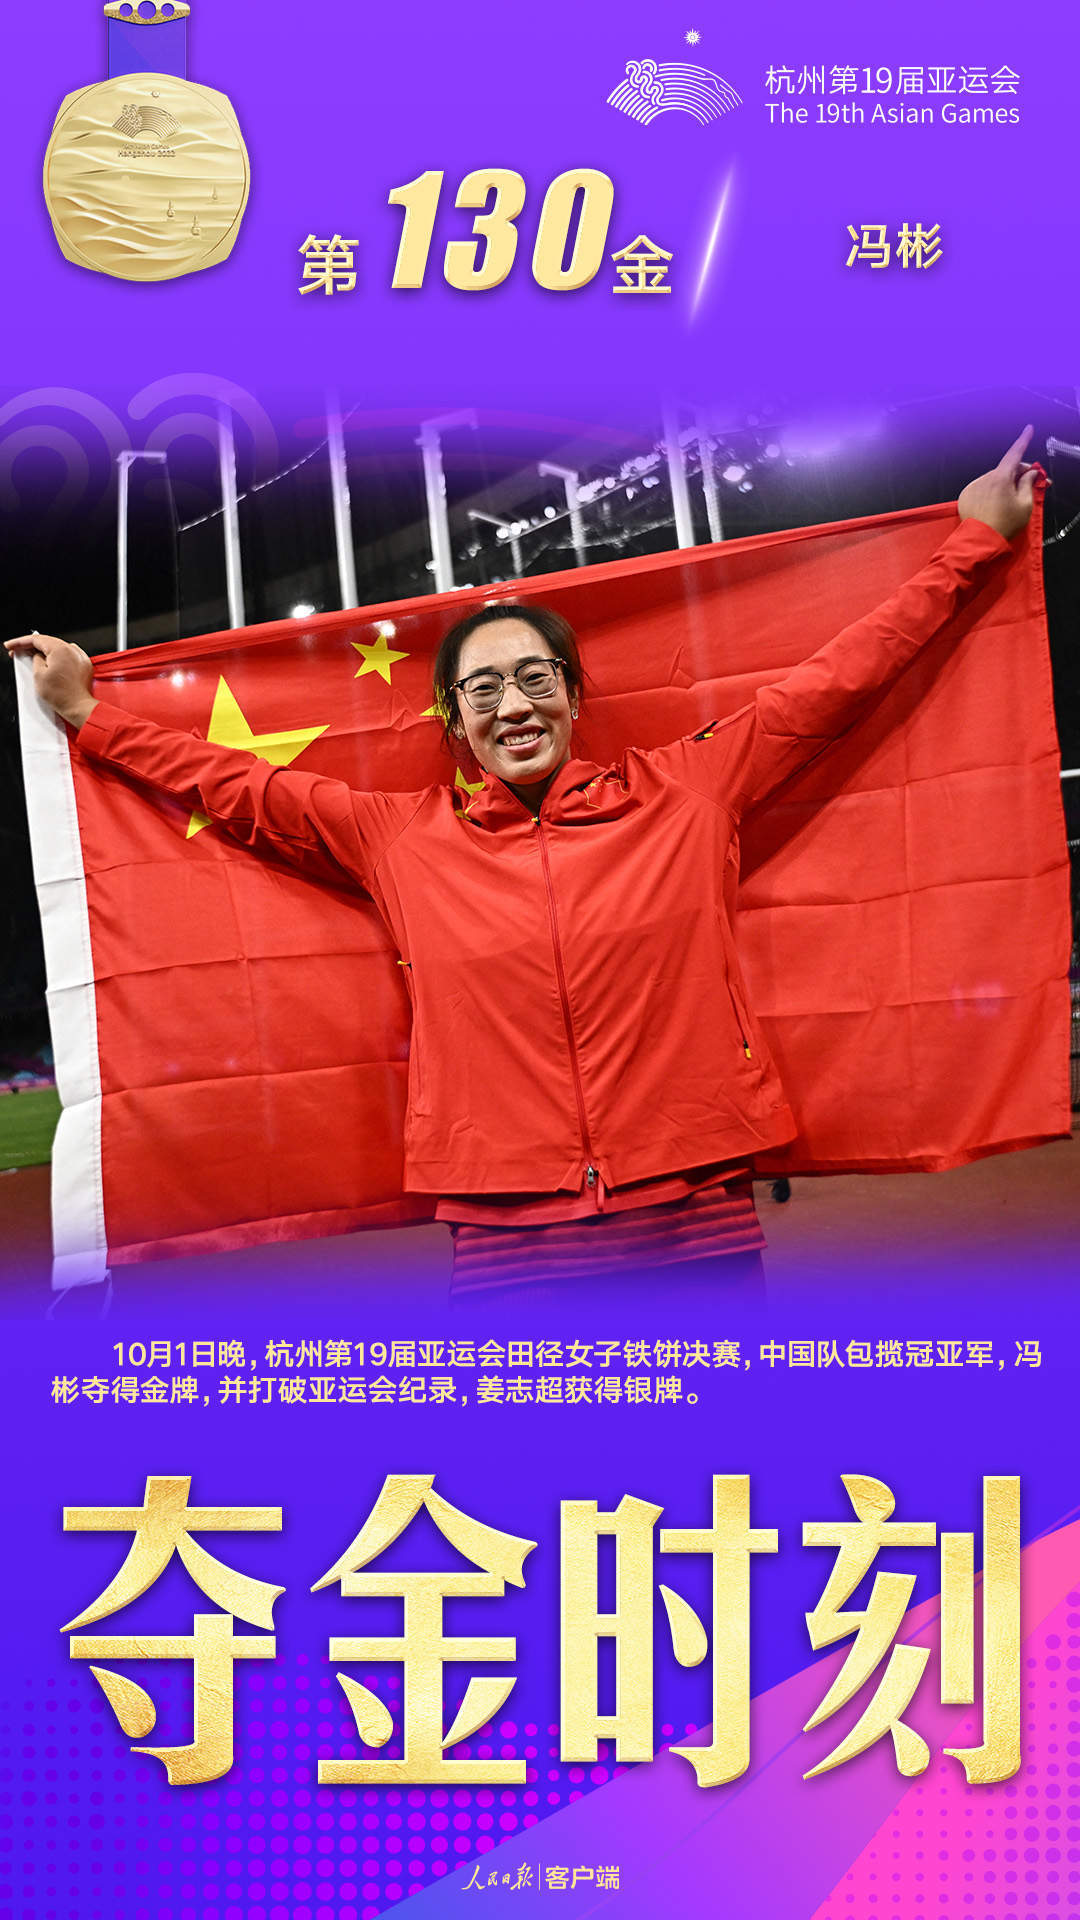 冯彬取得杭州亚运会女子铁饼冠军